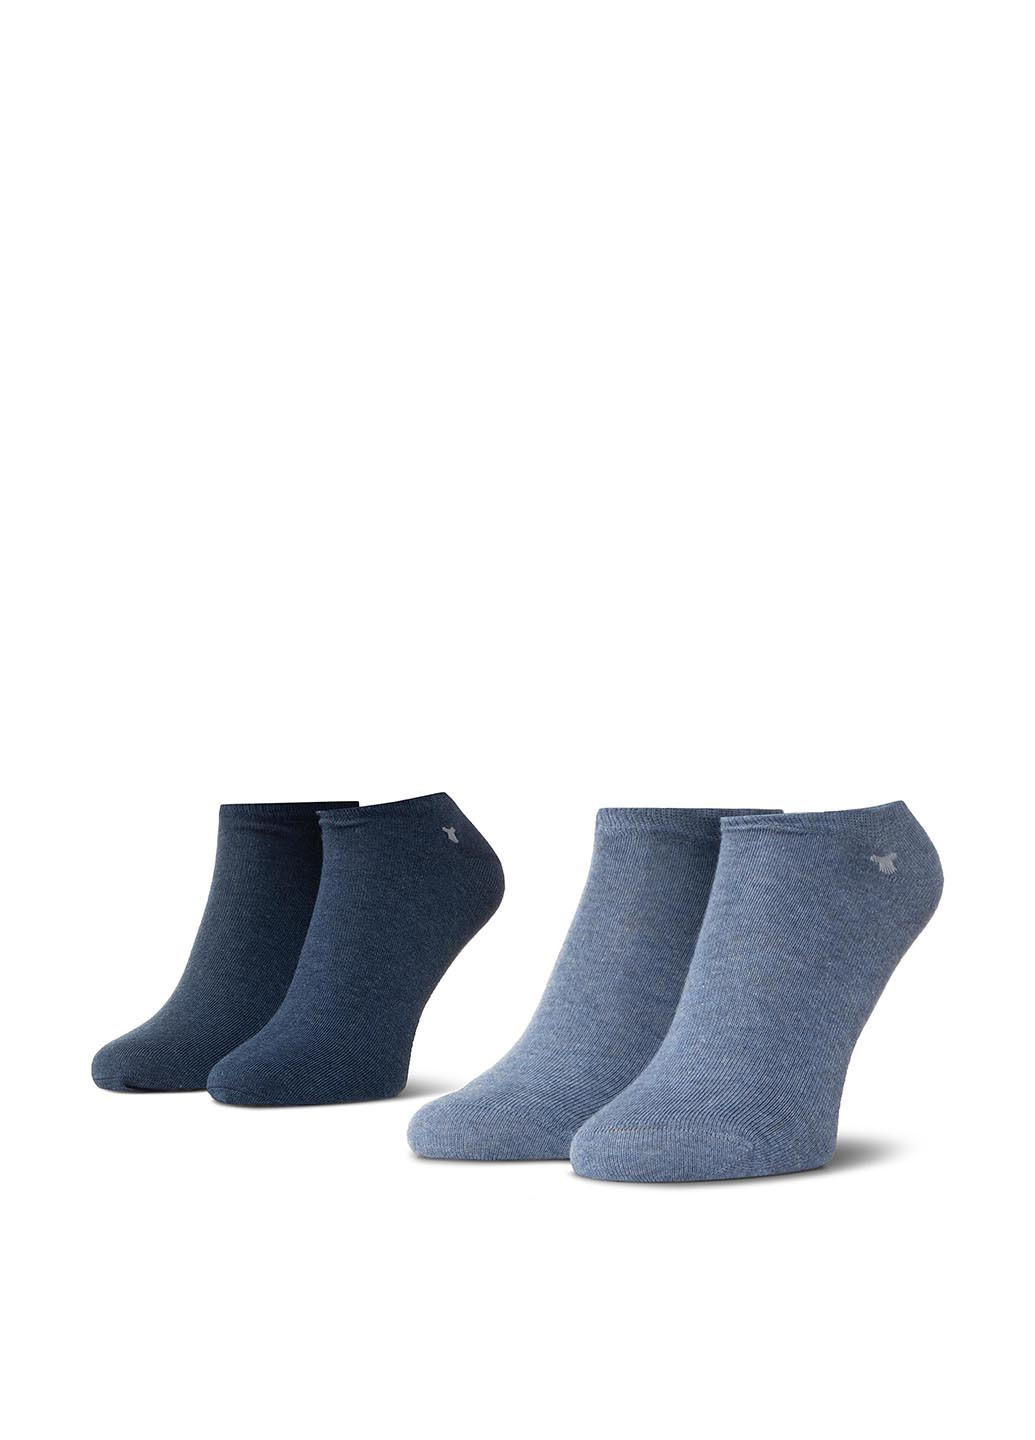 Шкарпетки чоловічі Tom Tailor 90190C 35-38 BLUE/DARK BLUE Tom Tailor 90190c 35-38 blue/dark blue (221794841)